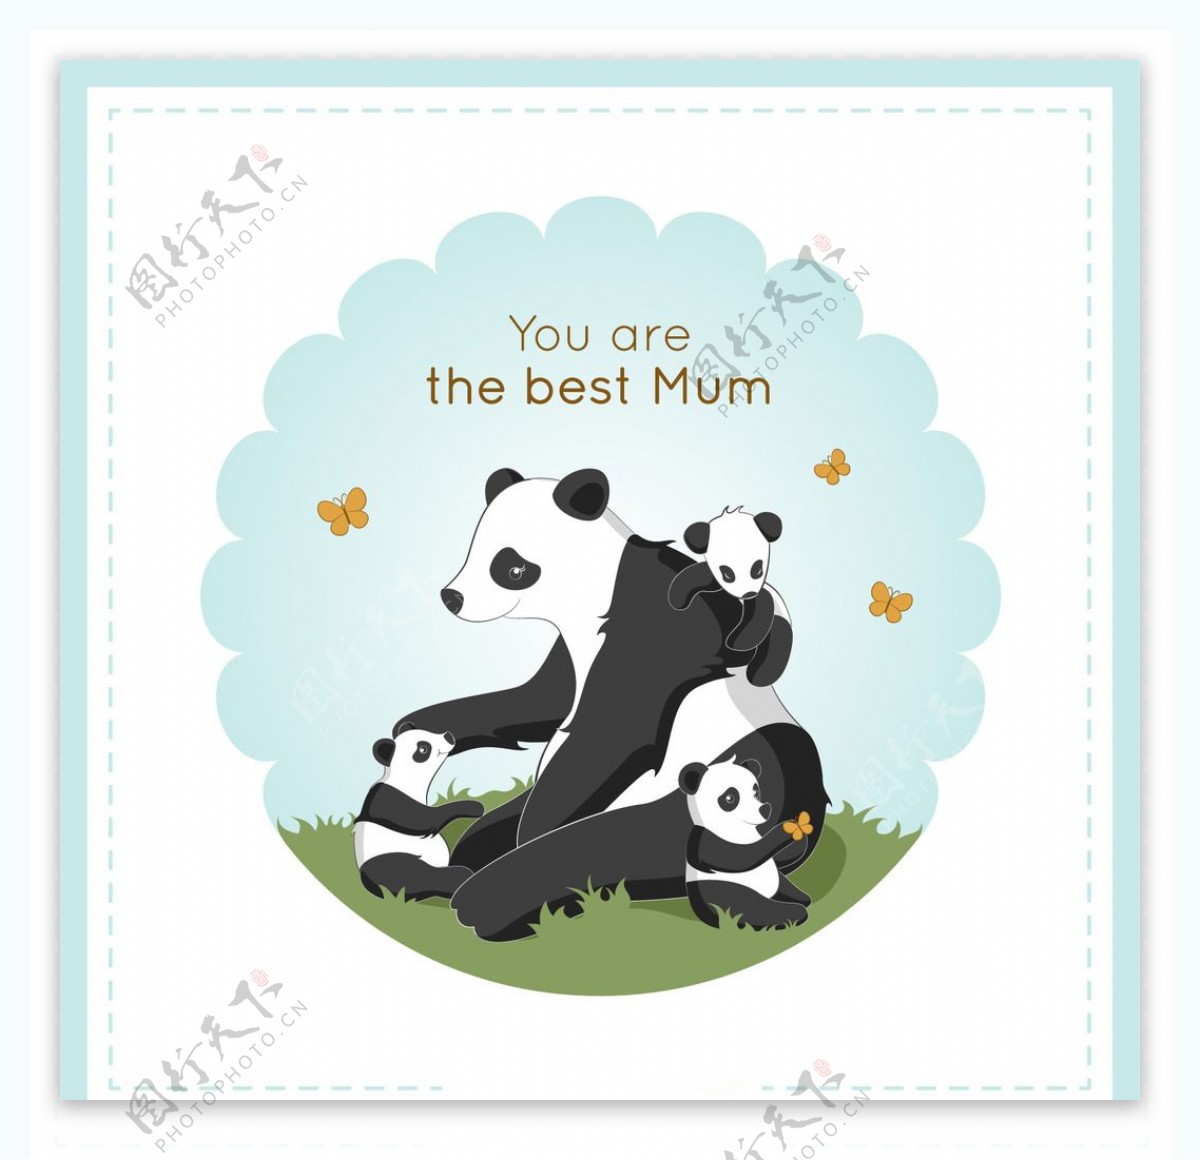 可爱的熊猫妈妈